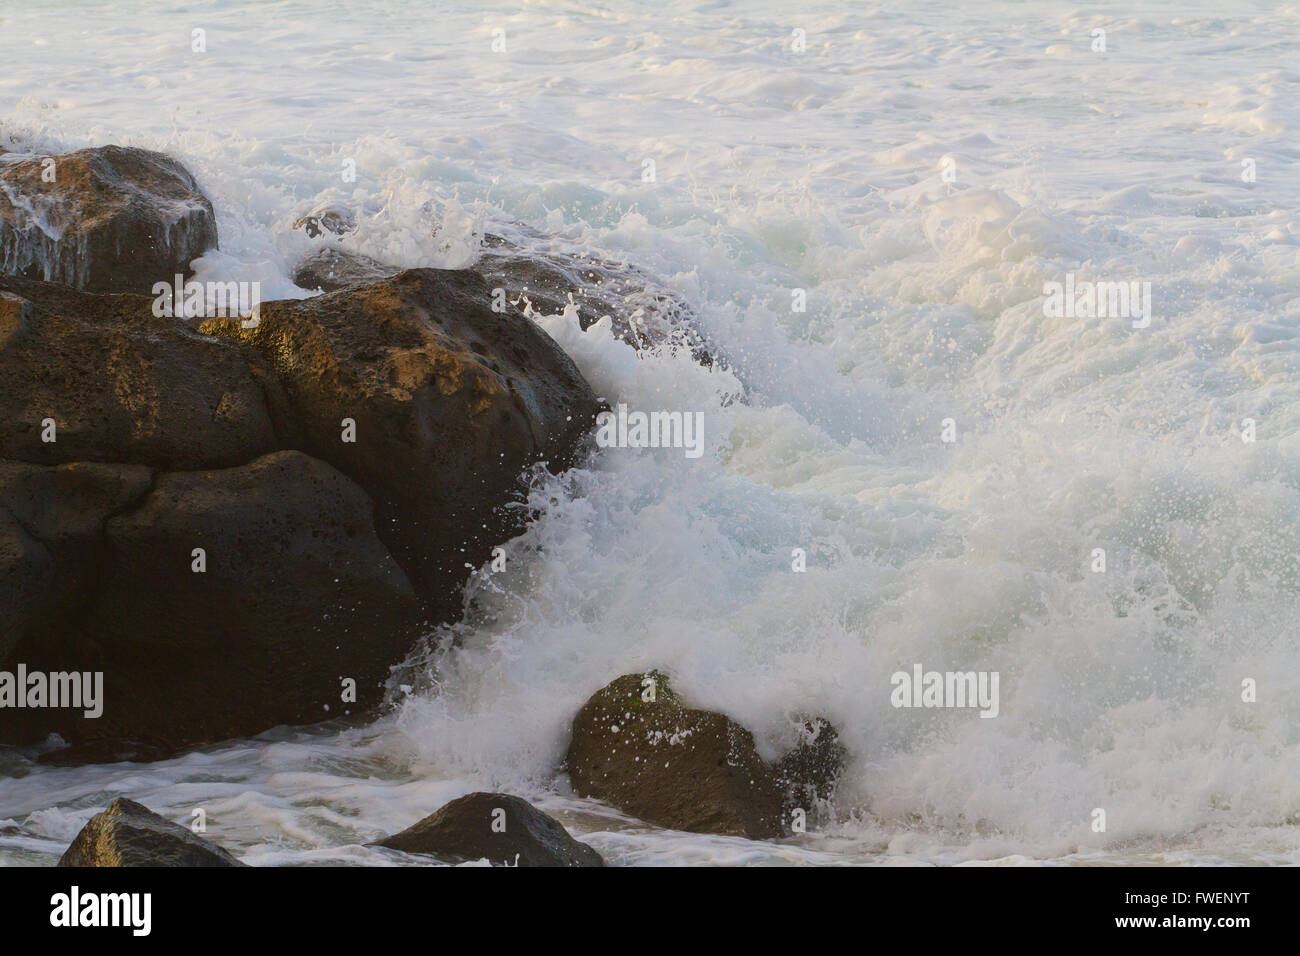 L'eau mousseuse blanche se précipite en plus dangereusement quelques roches sur la côte nord d'Oahu au cours d'une énorme tempête dans l'océan. Banque D'Images